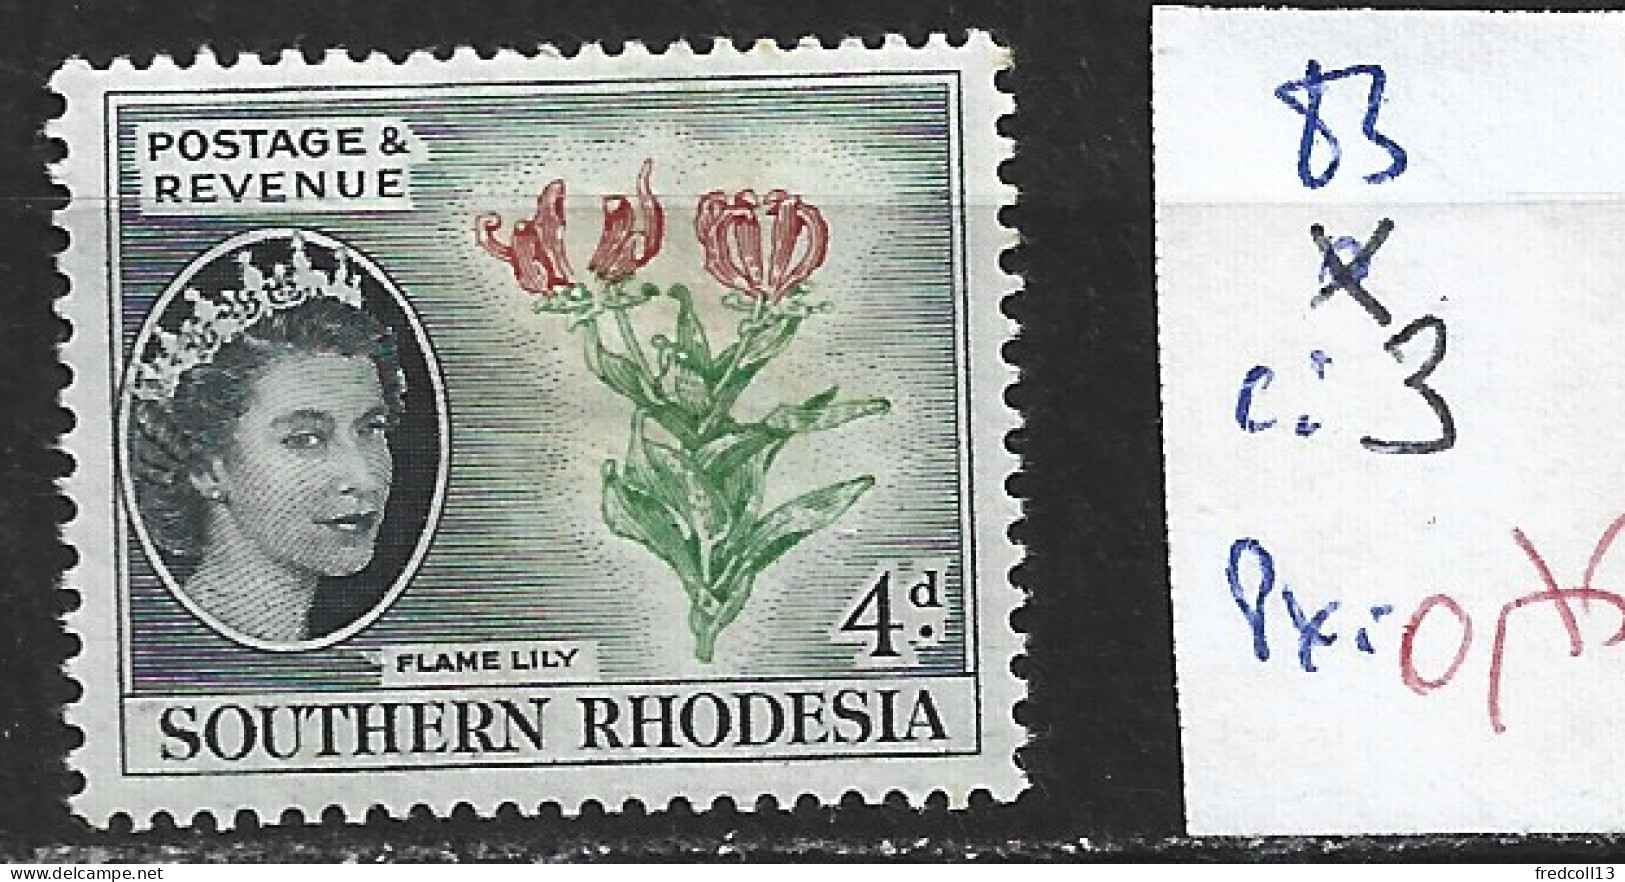 RHODESIE DU SUD 83 * Côte 3 € - Southern Rhodesia (...-1964)